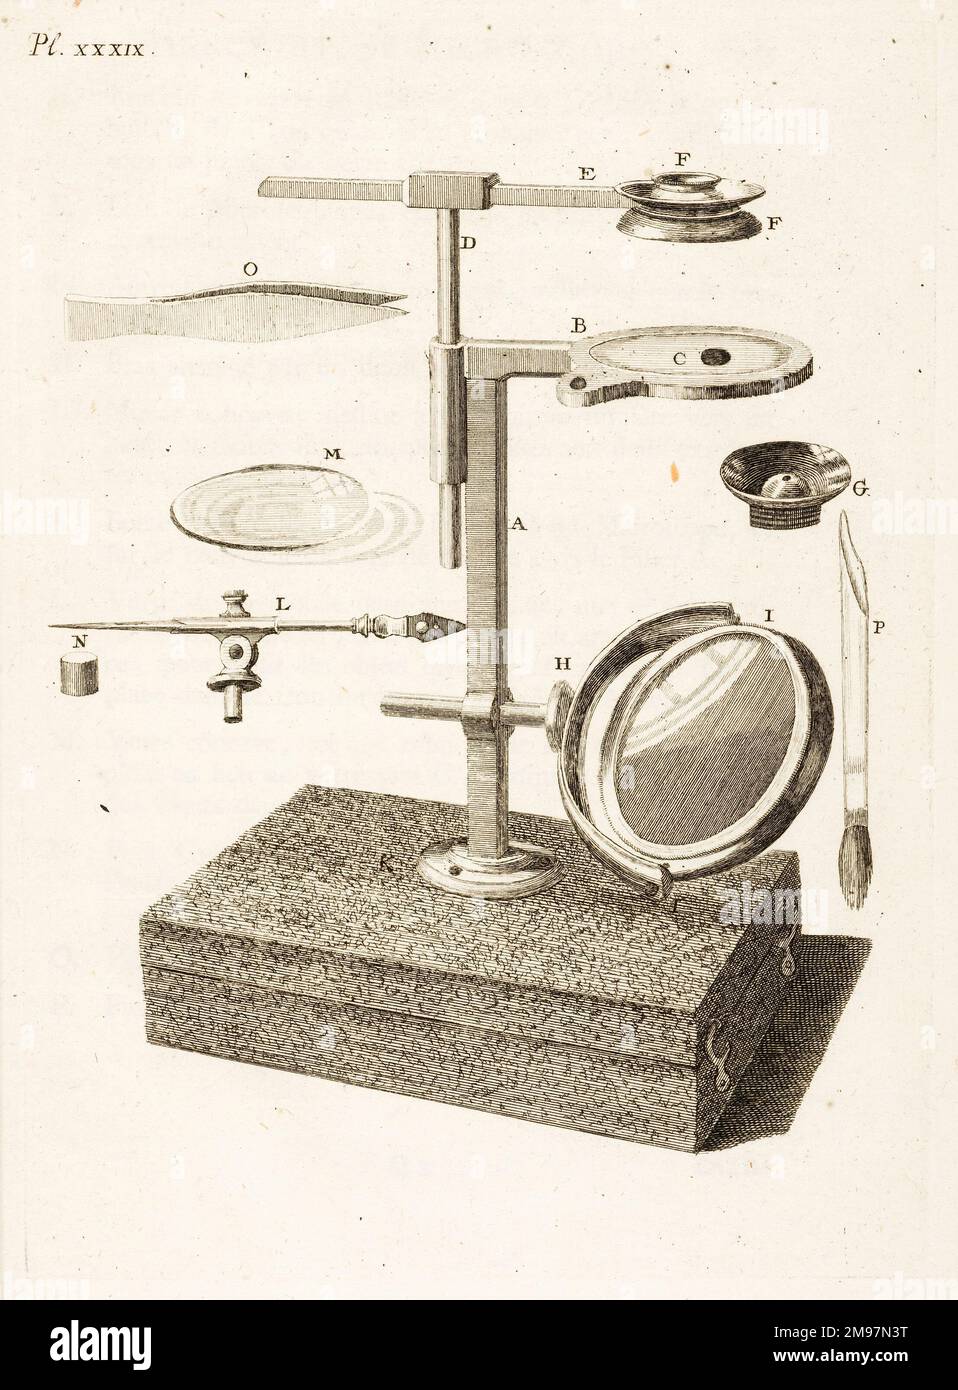 Aquatic microscope. Engraving from John Ellis, Essai sur l'histoire naturelle des corallines, et d'autres productions marines. Plate XXXIX. Stock Photo